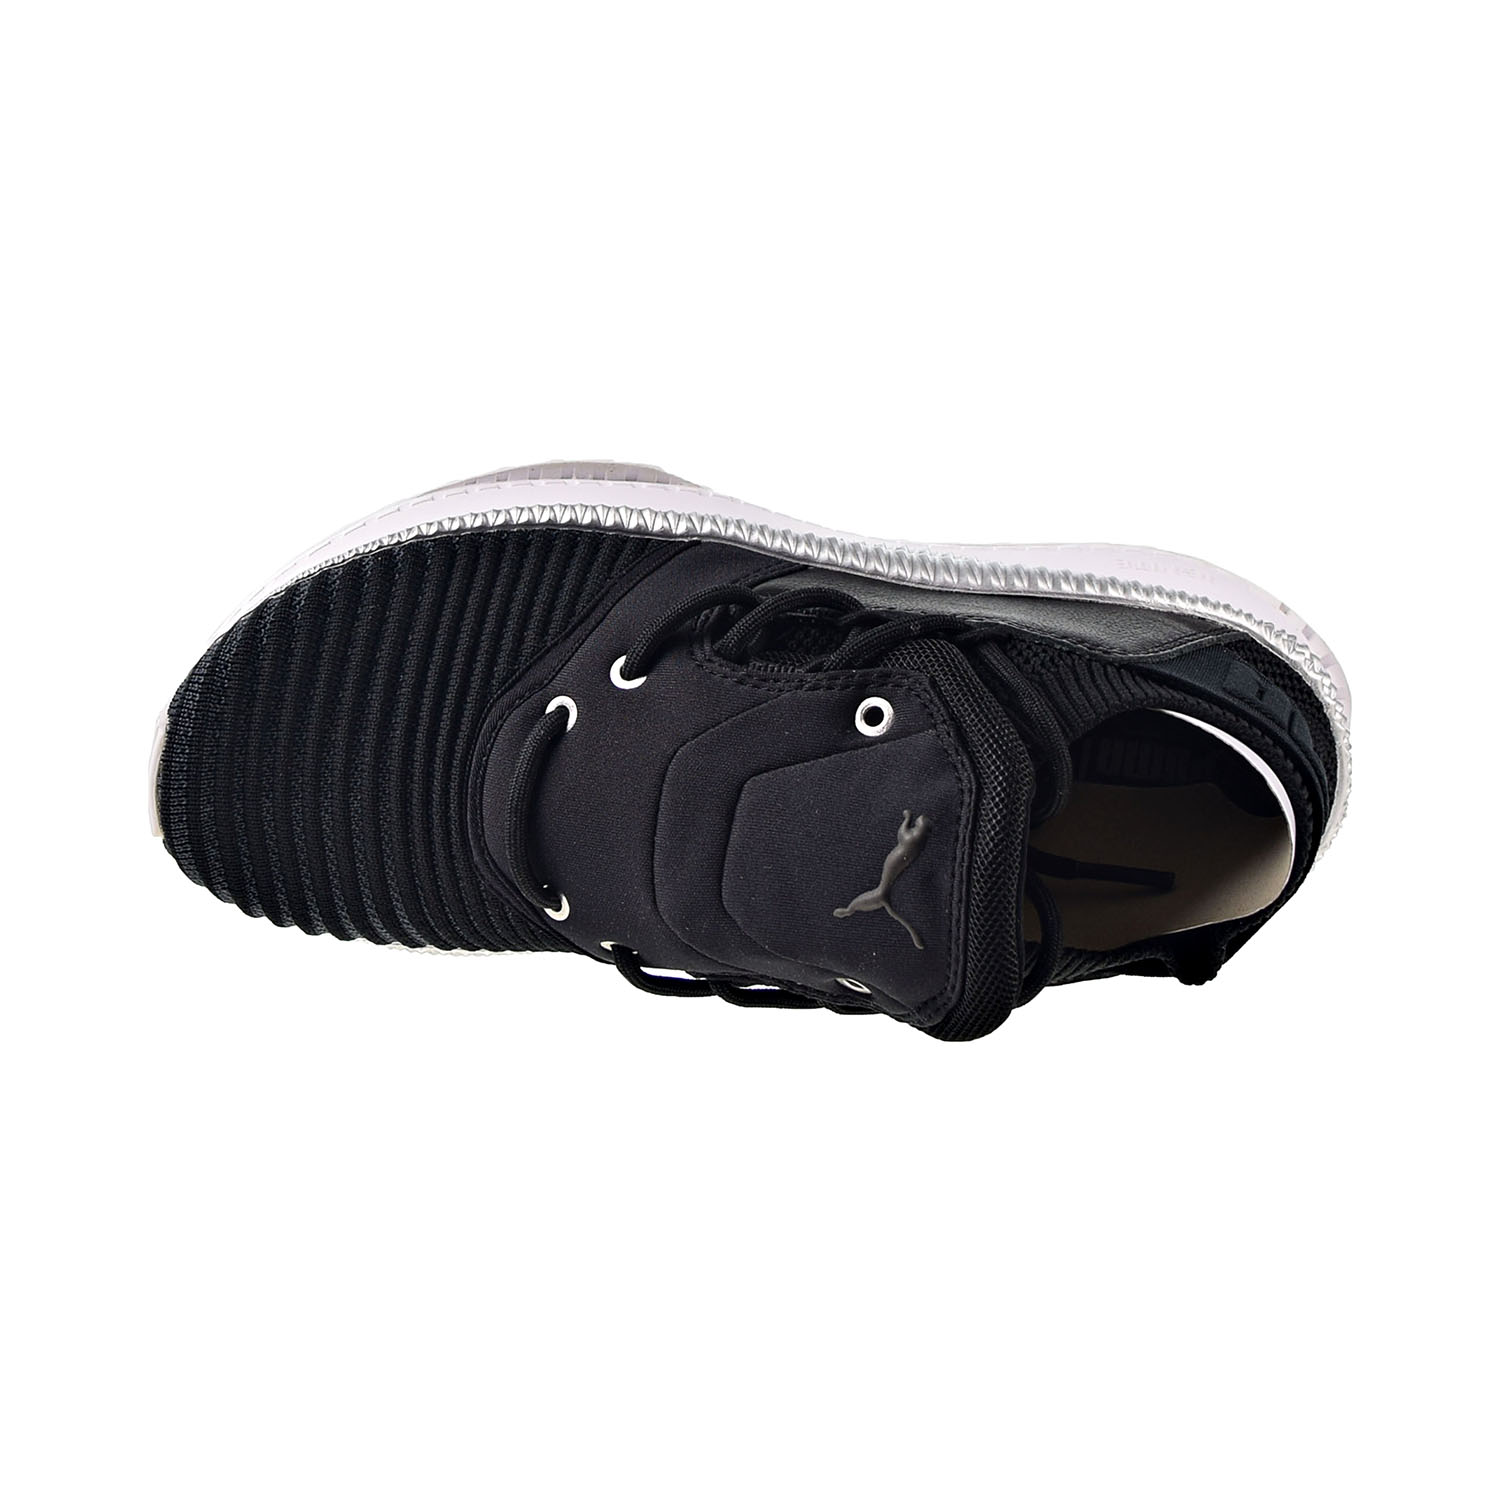 Puma Tsugi Shinsei Evoknit Men's Shoes Black-White 365491-05 - image 5 of 6